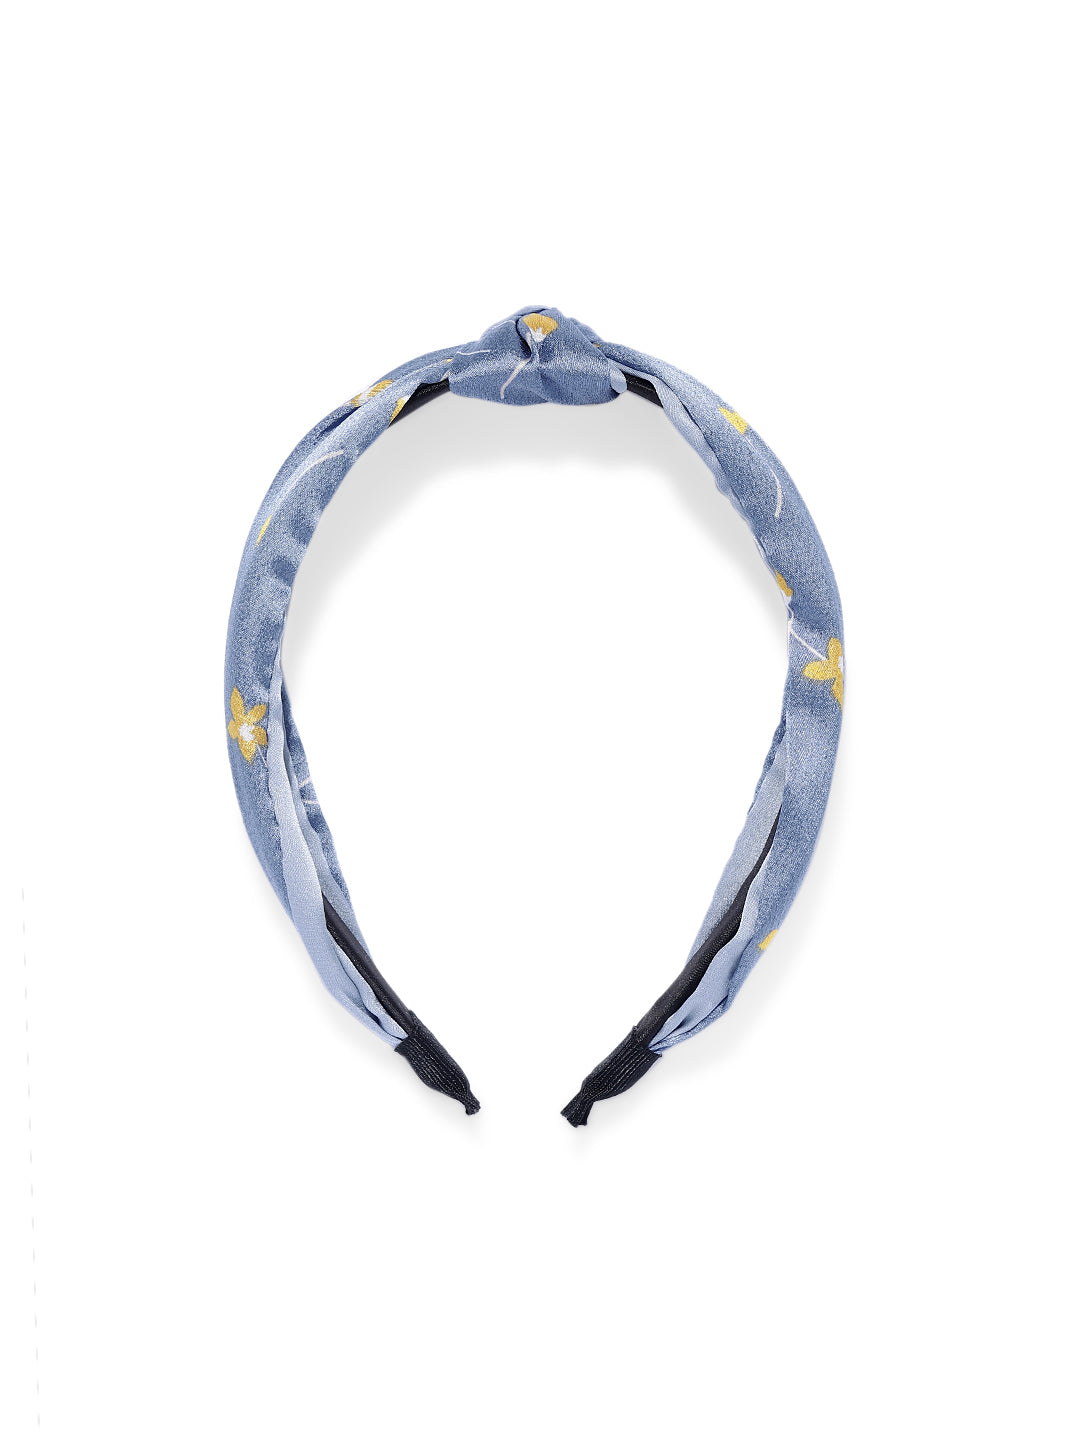 Vegan Handmade Knotted Hairband in Sky Blue - ChicMela